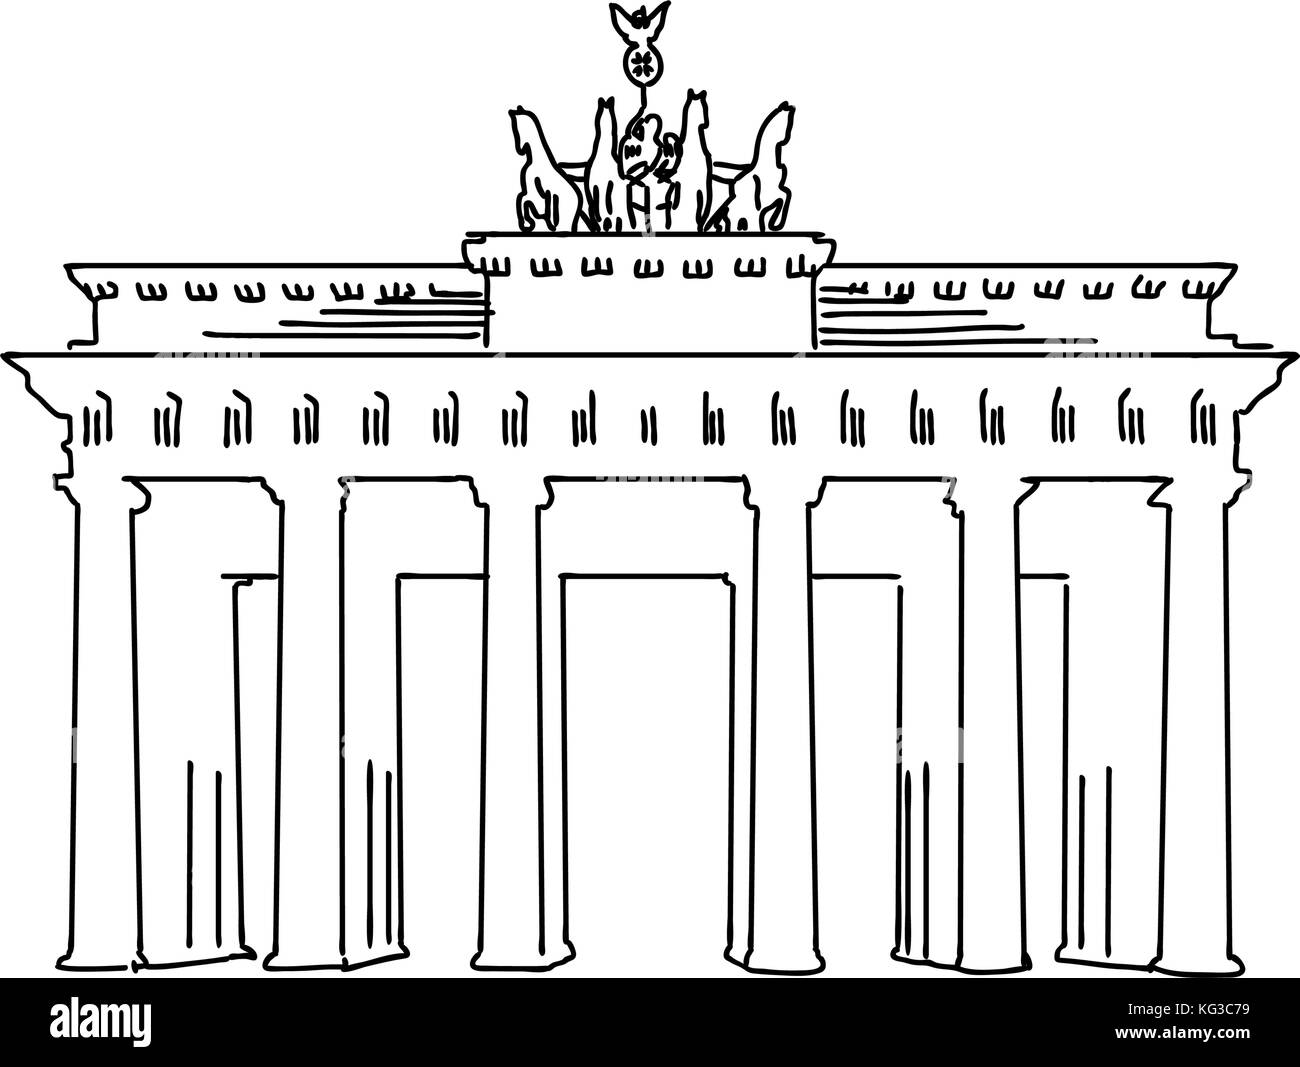 Berlin, Deutschland berühmte Reisen Skizze. Lineart Zeichnung von Hand. Grußkarte Design, Vektor, Abbildung Stock Vektor